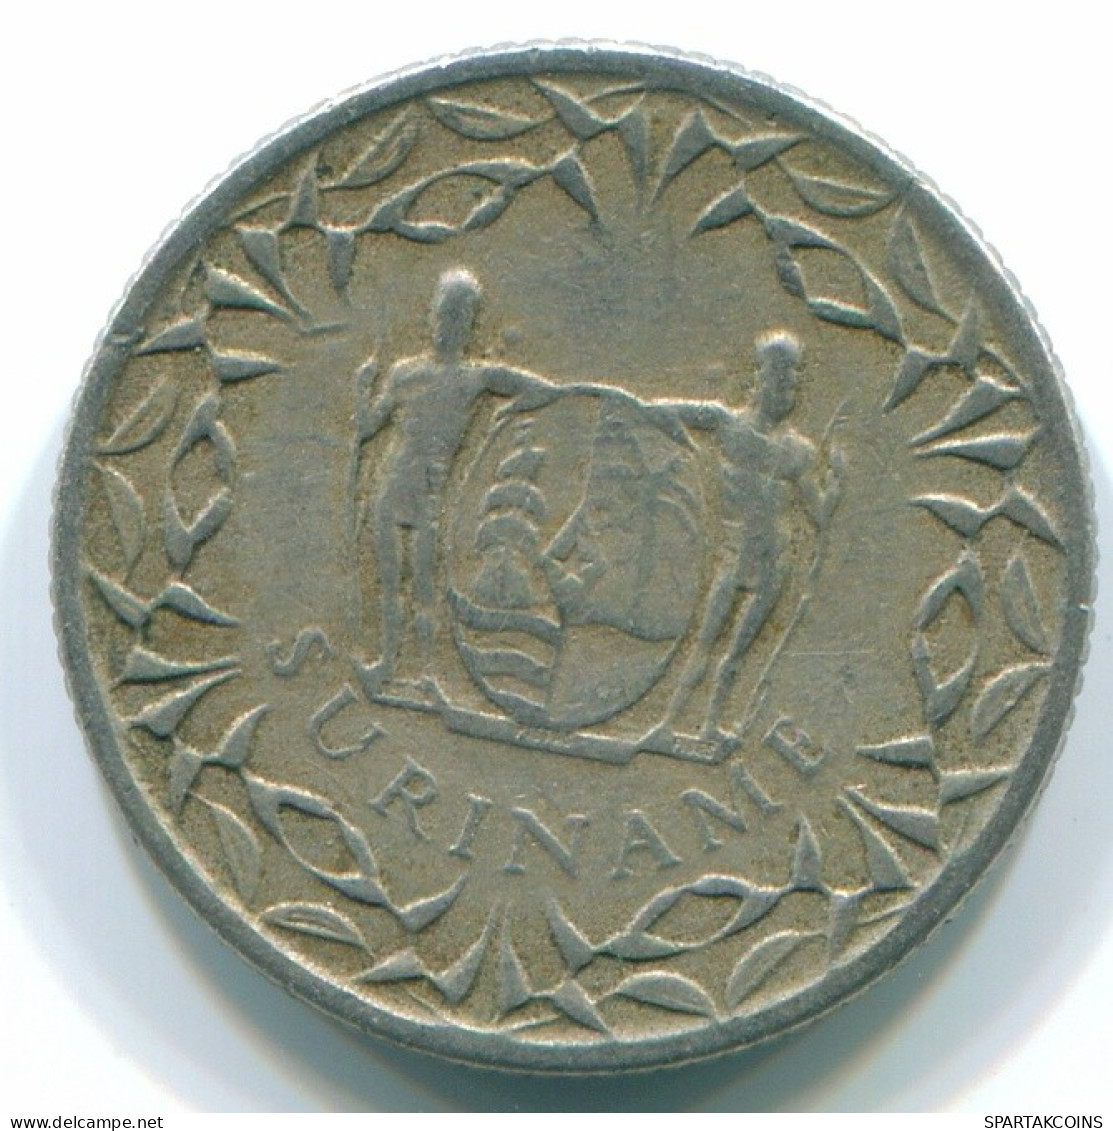 10 CENTS 1962 SURINAM NIEDERLANDE Nickel Koloniale Münze #S13209.D.A - Suriname 1975 - ...